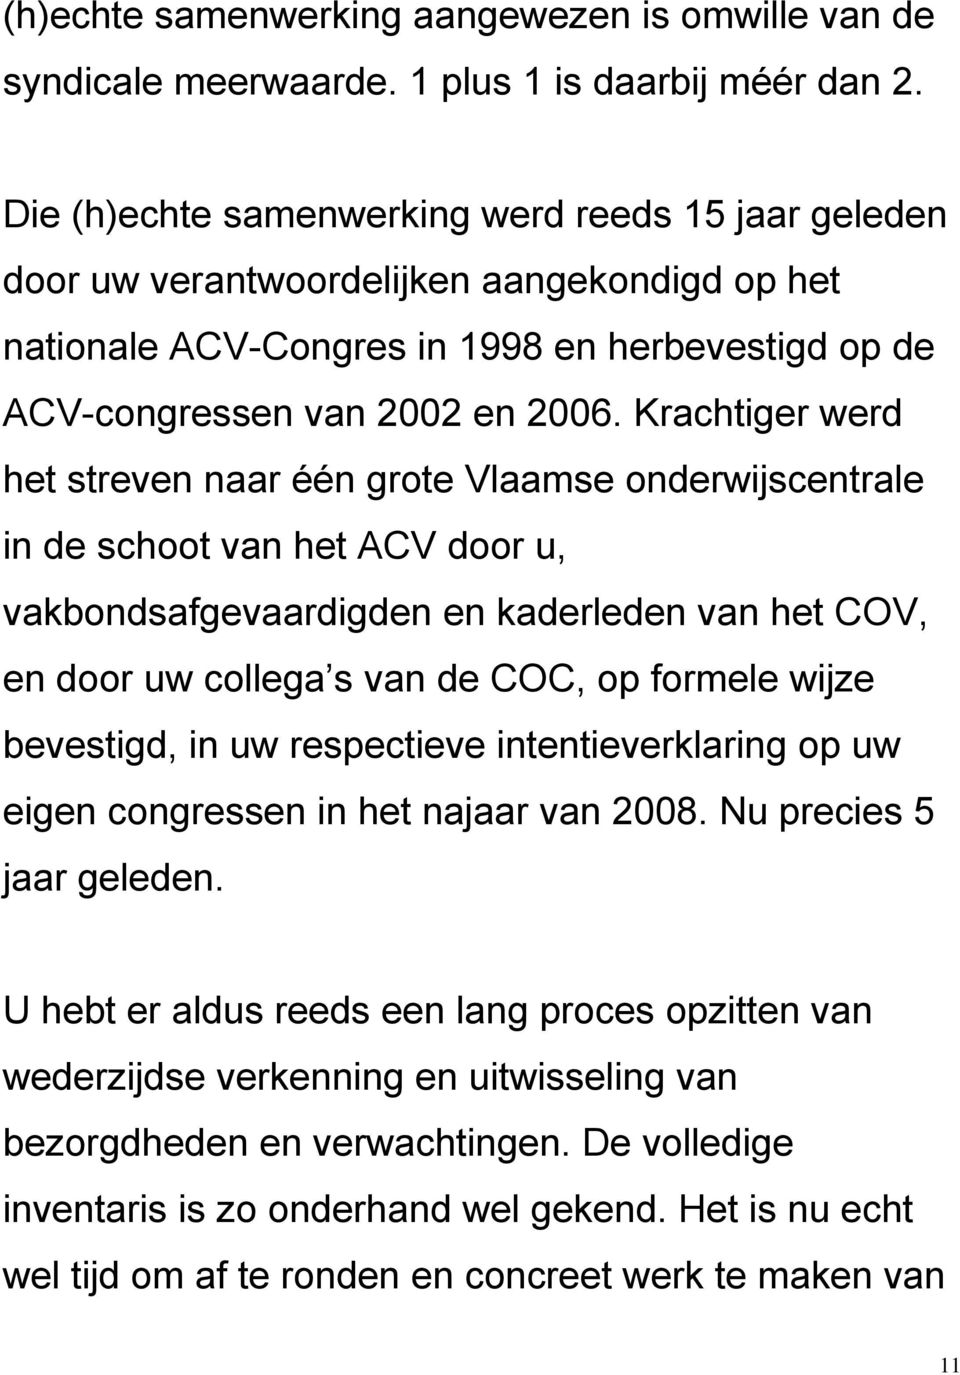 Krachtiger werd het streven naar één grote Vlaamse onderwijscentrale in de schoot van het ACV door u, vakbondsafgevaardigden en kaderleden van het COV, en door uw collega s van de COC, op formele